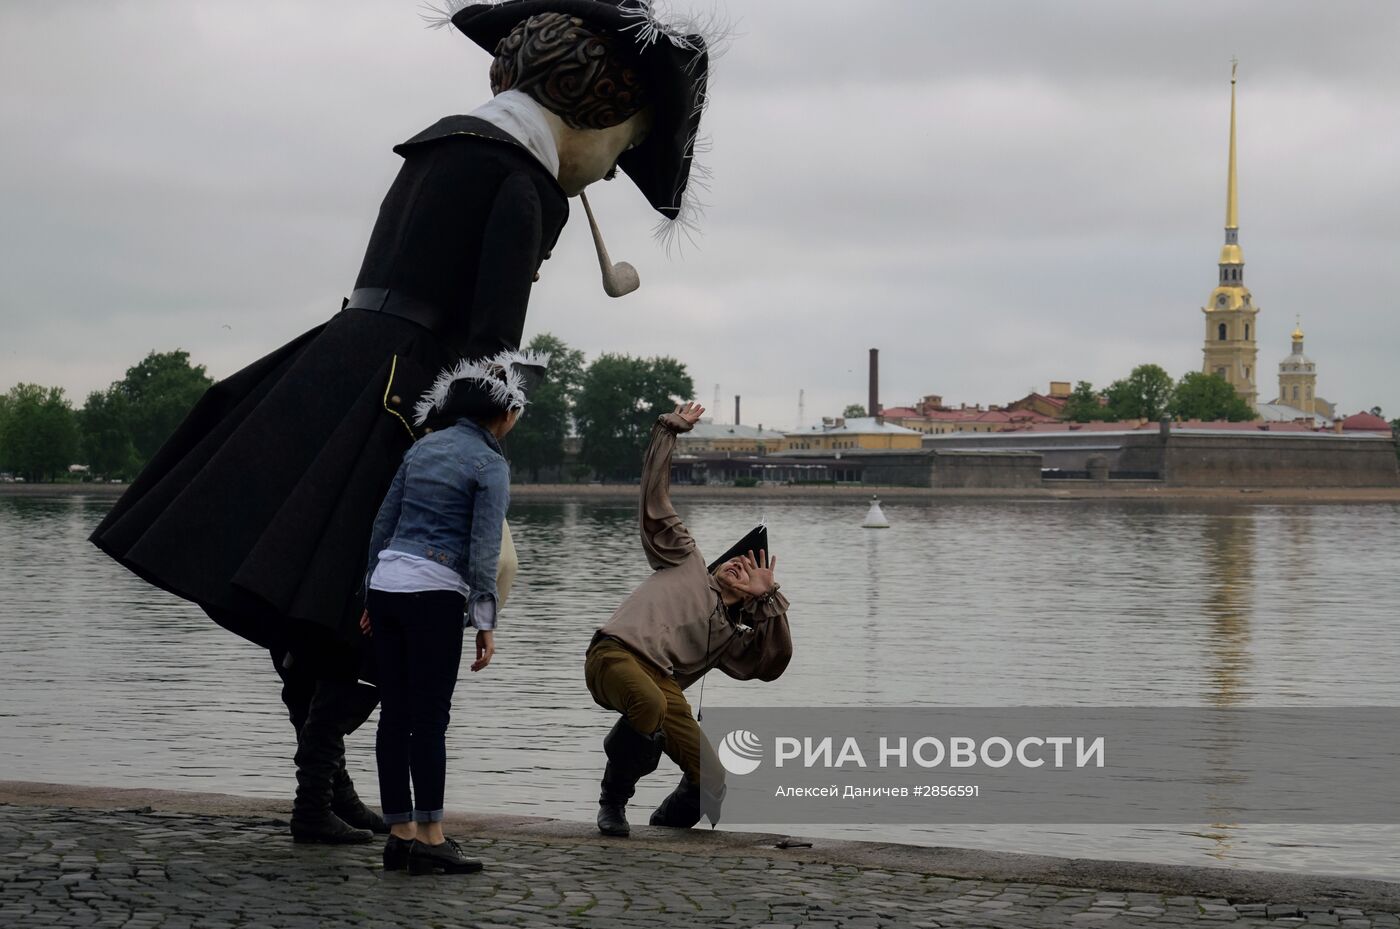 Акция театра "Кукольный формат" накануне Дня города в Санкт-Петербурге